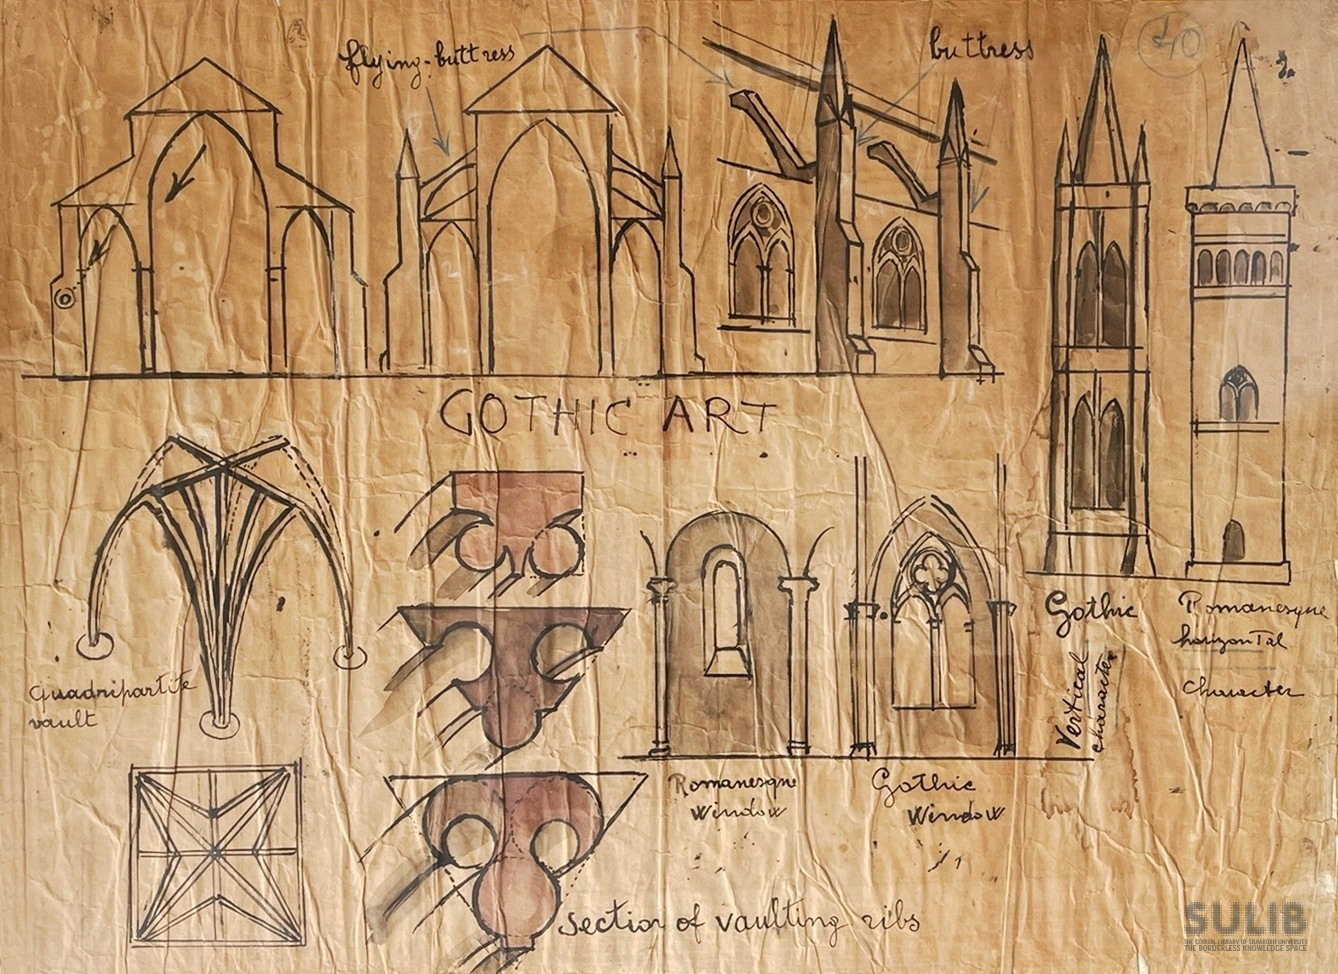 ภาพลายเส้นแสดงภาพรูปตัดของโบสถ์ในรูปแบบศิลปะโกธิค (Gothic)